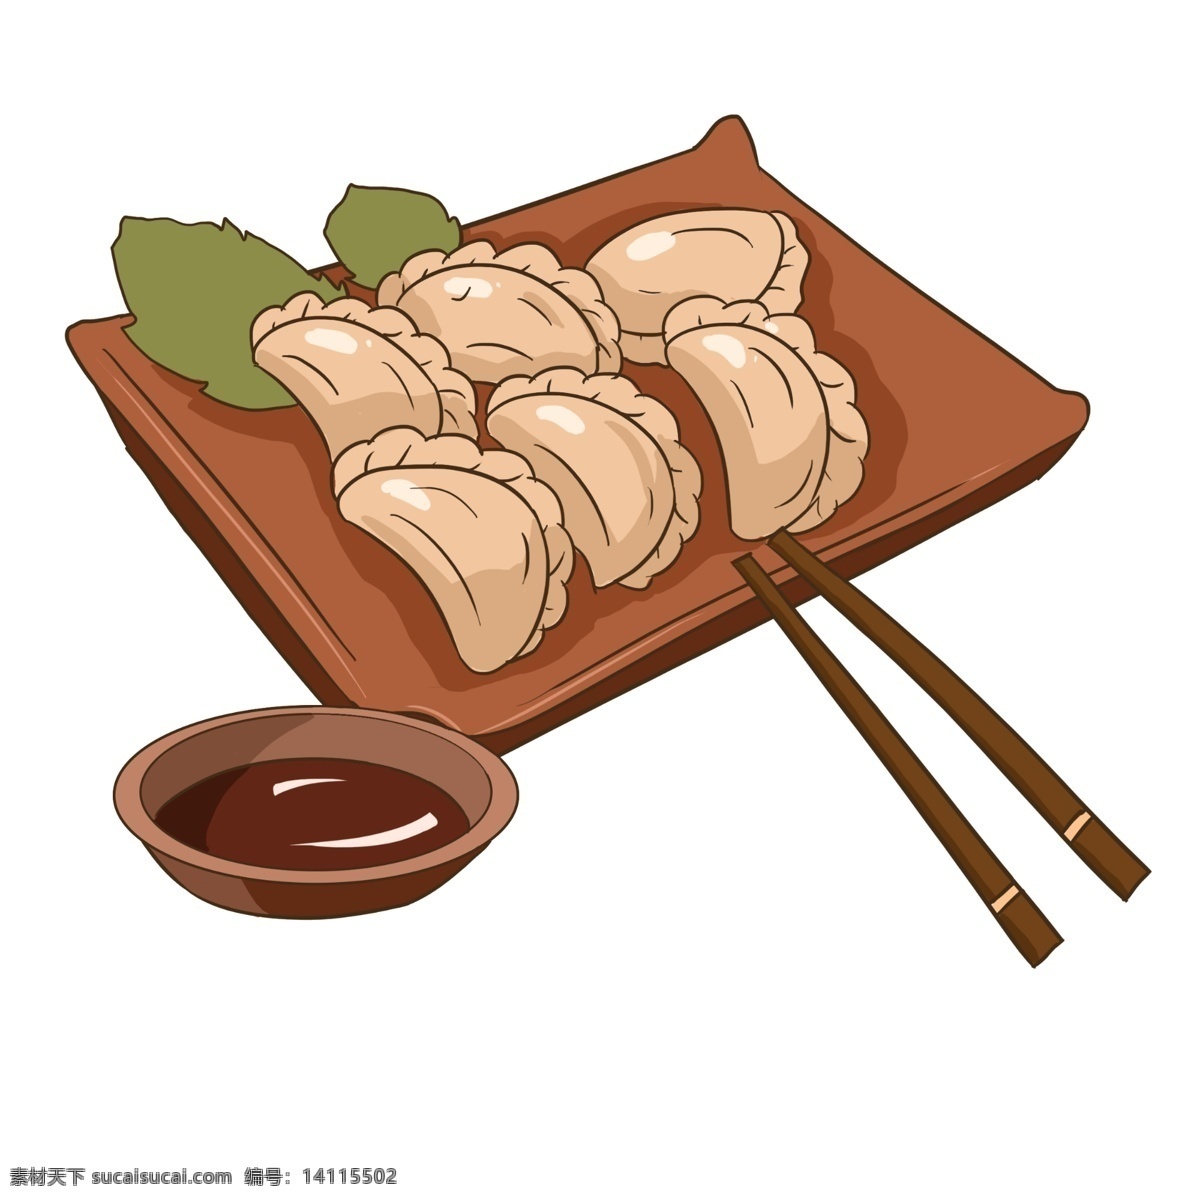 手绘 盘 饺子 插画 水饺 美食 筷子 醋碟 一盘饺子 健康 营养 餐饮美食 美味 饺子插画